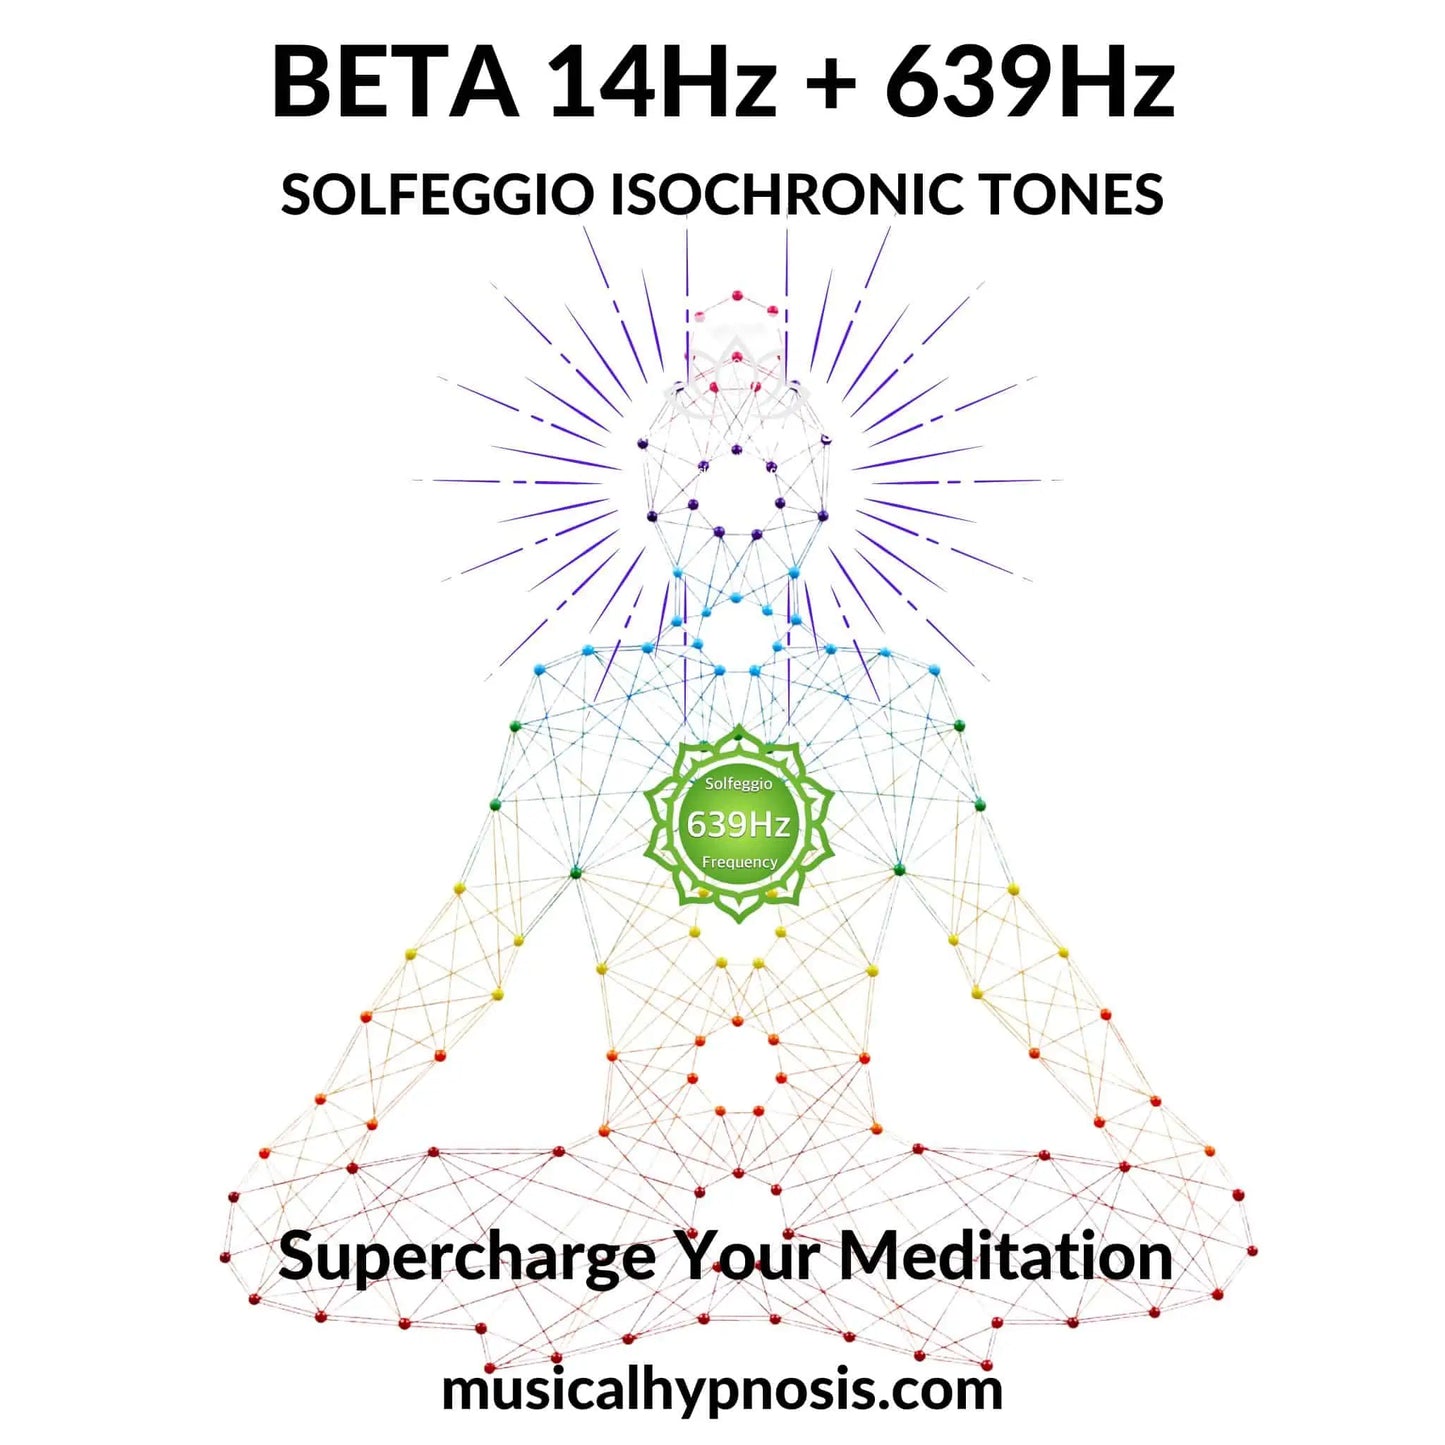 Beta 14Hz and 639Hz Solfeggio Isochronic Tones | 30 minutes